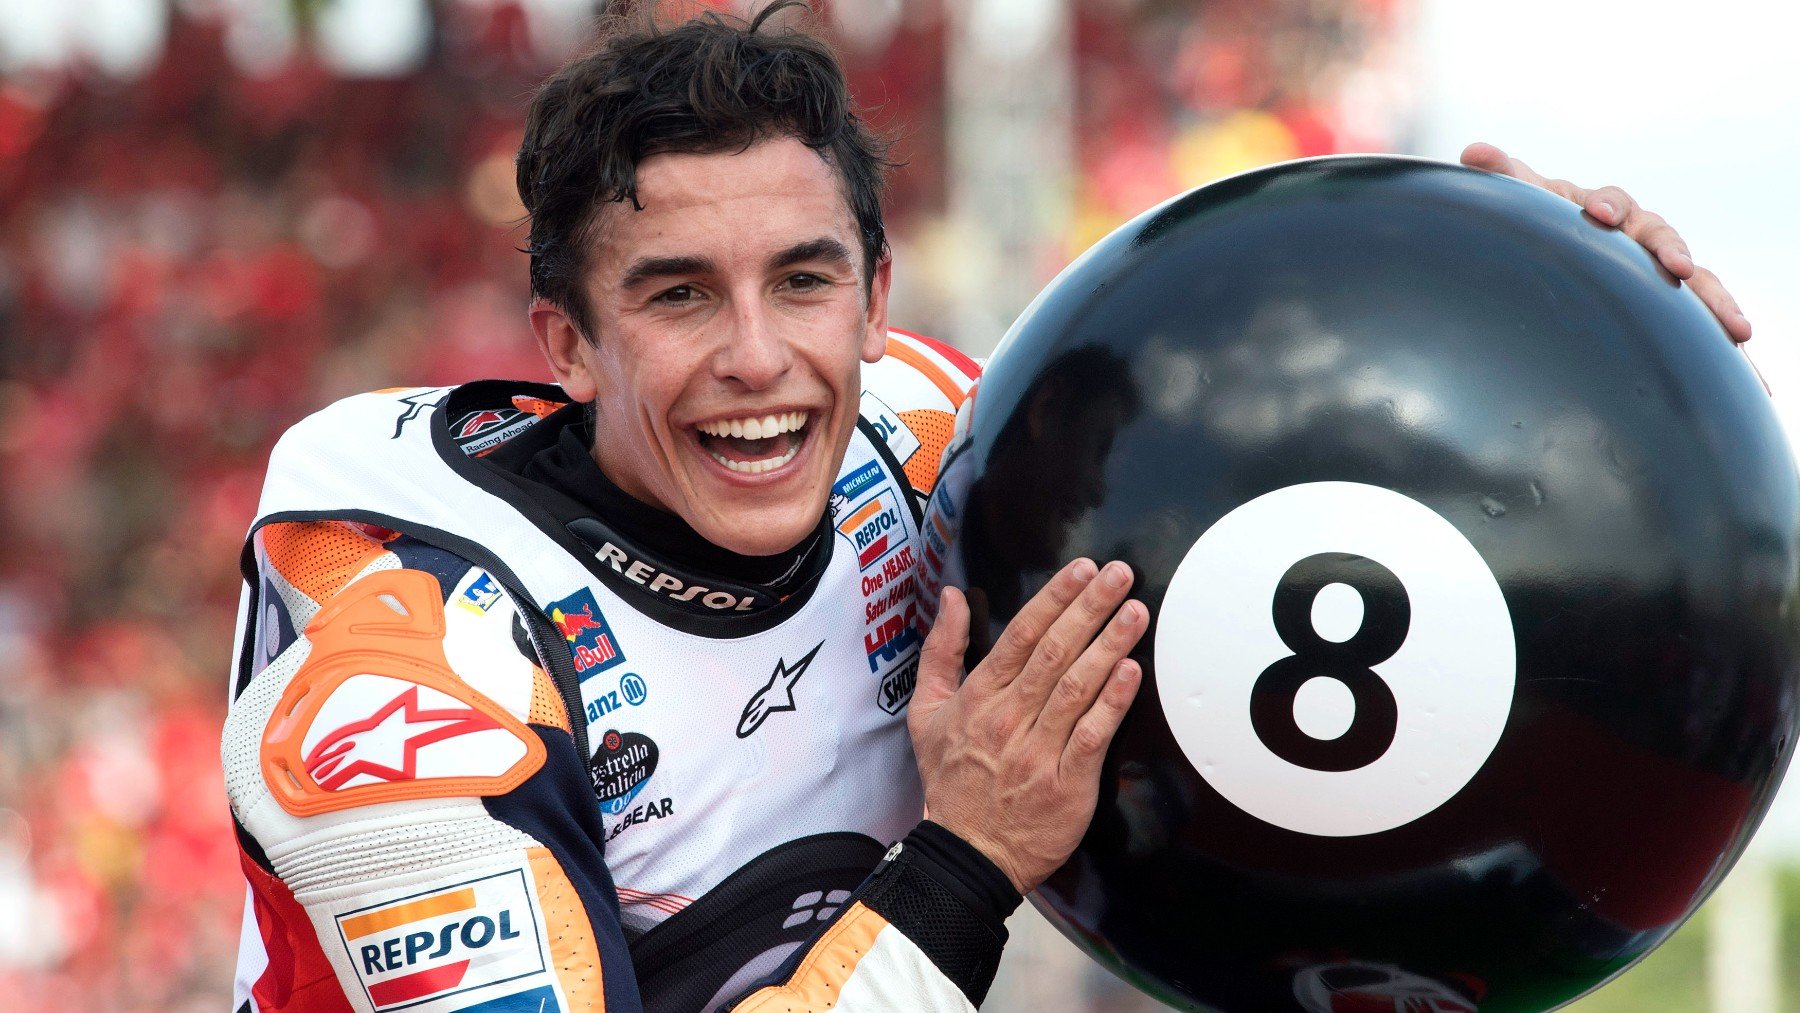 Marc Márquez celebra su octavo título tras ganar en Tailandia. (Getty)